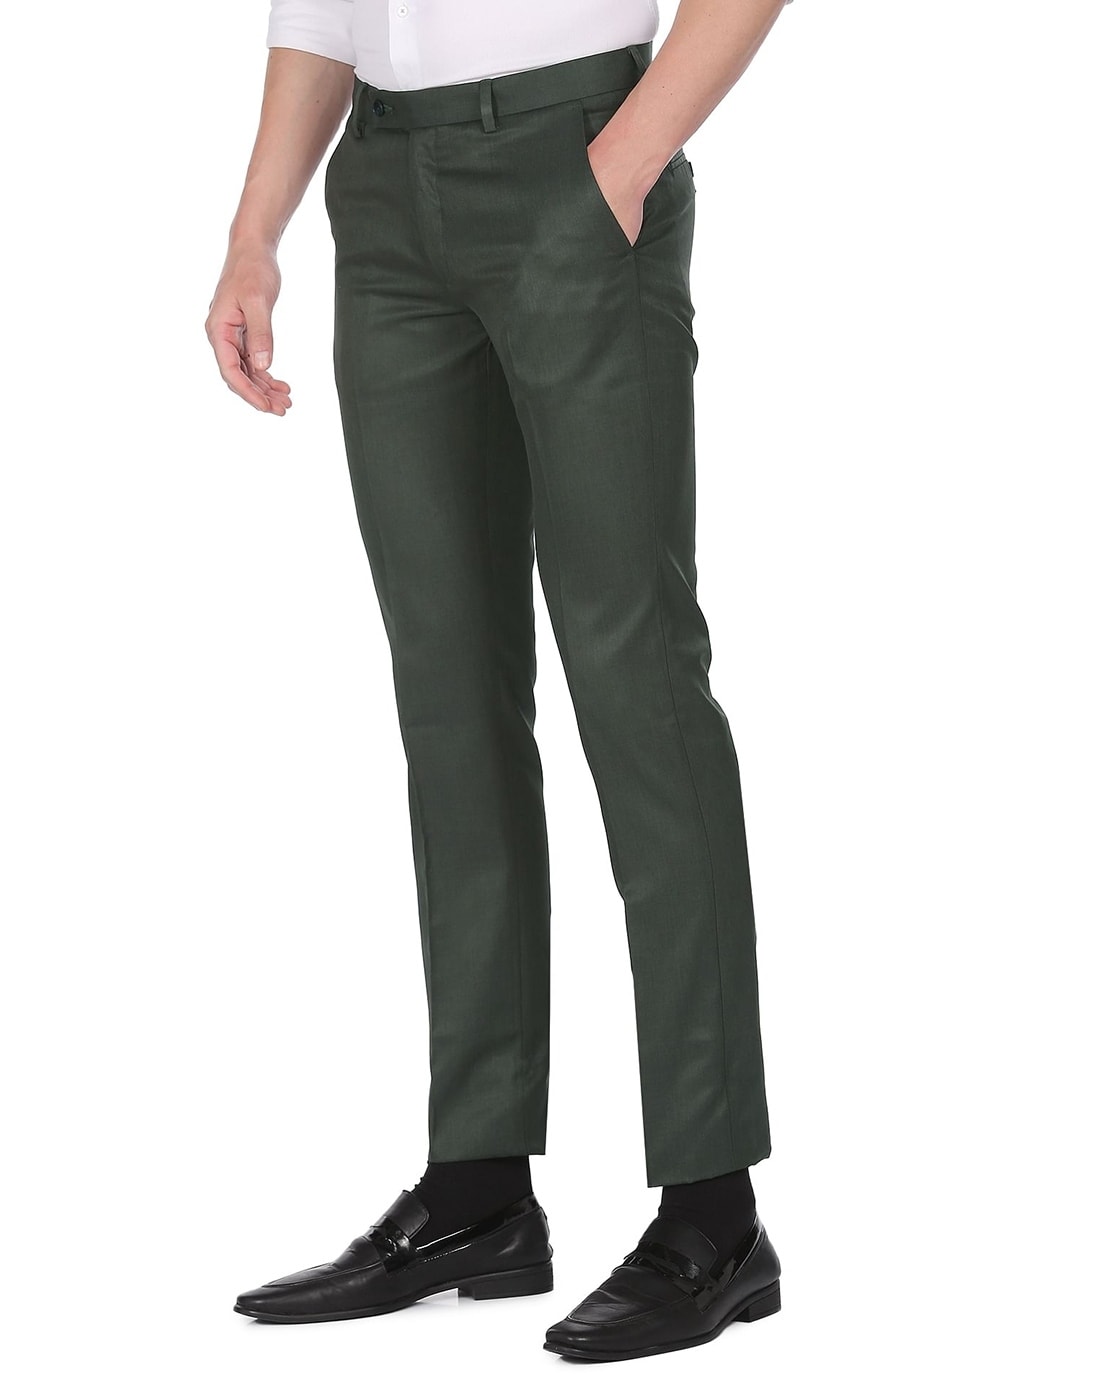 Buy Arrow Sport Dark Green Slim Fit Flat Front Trousers for Mens Online   Tata CLiQ